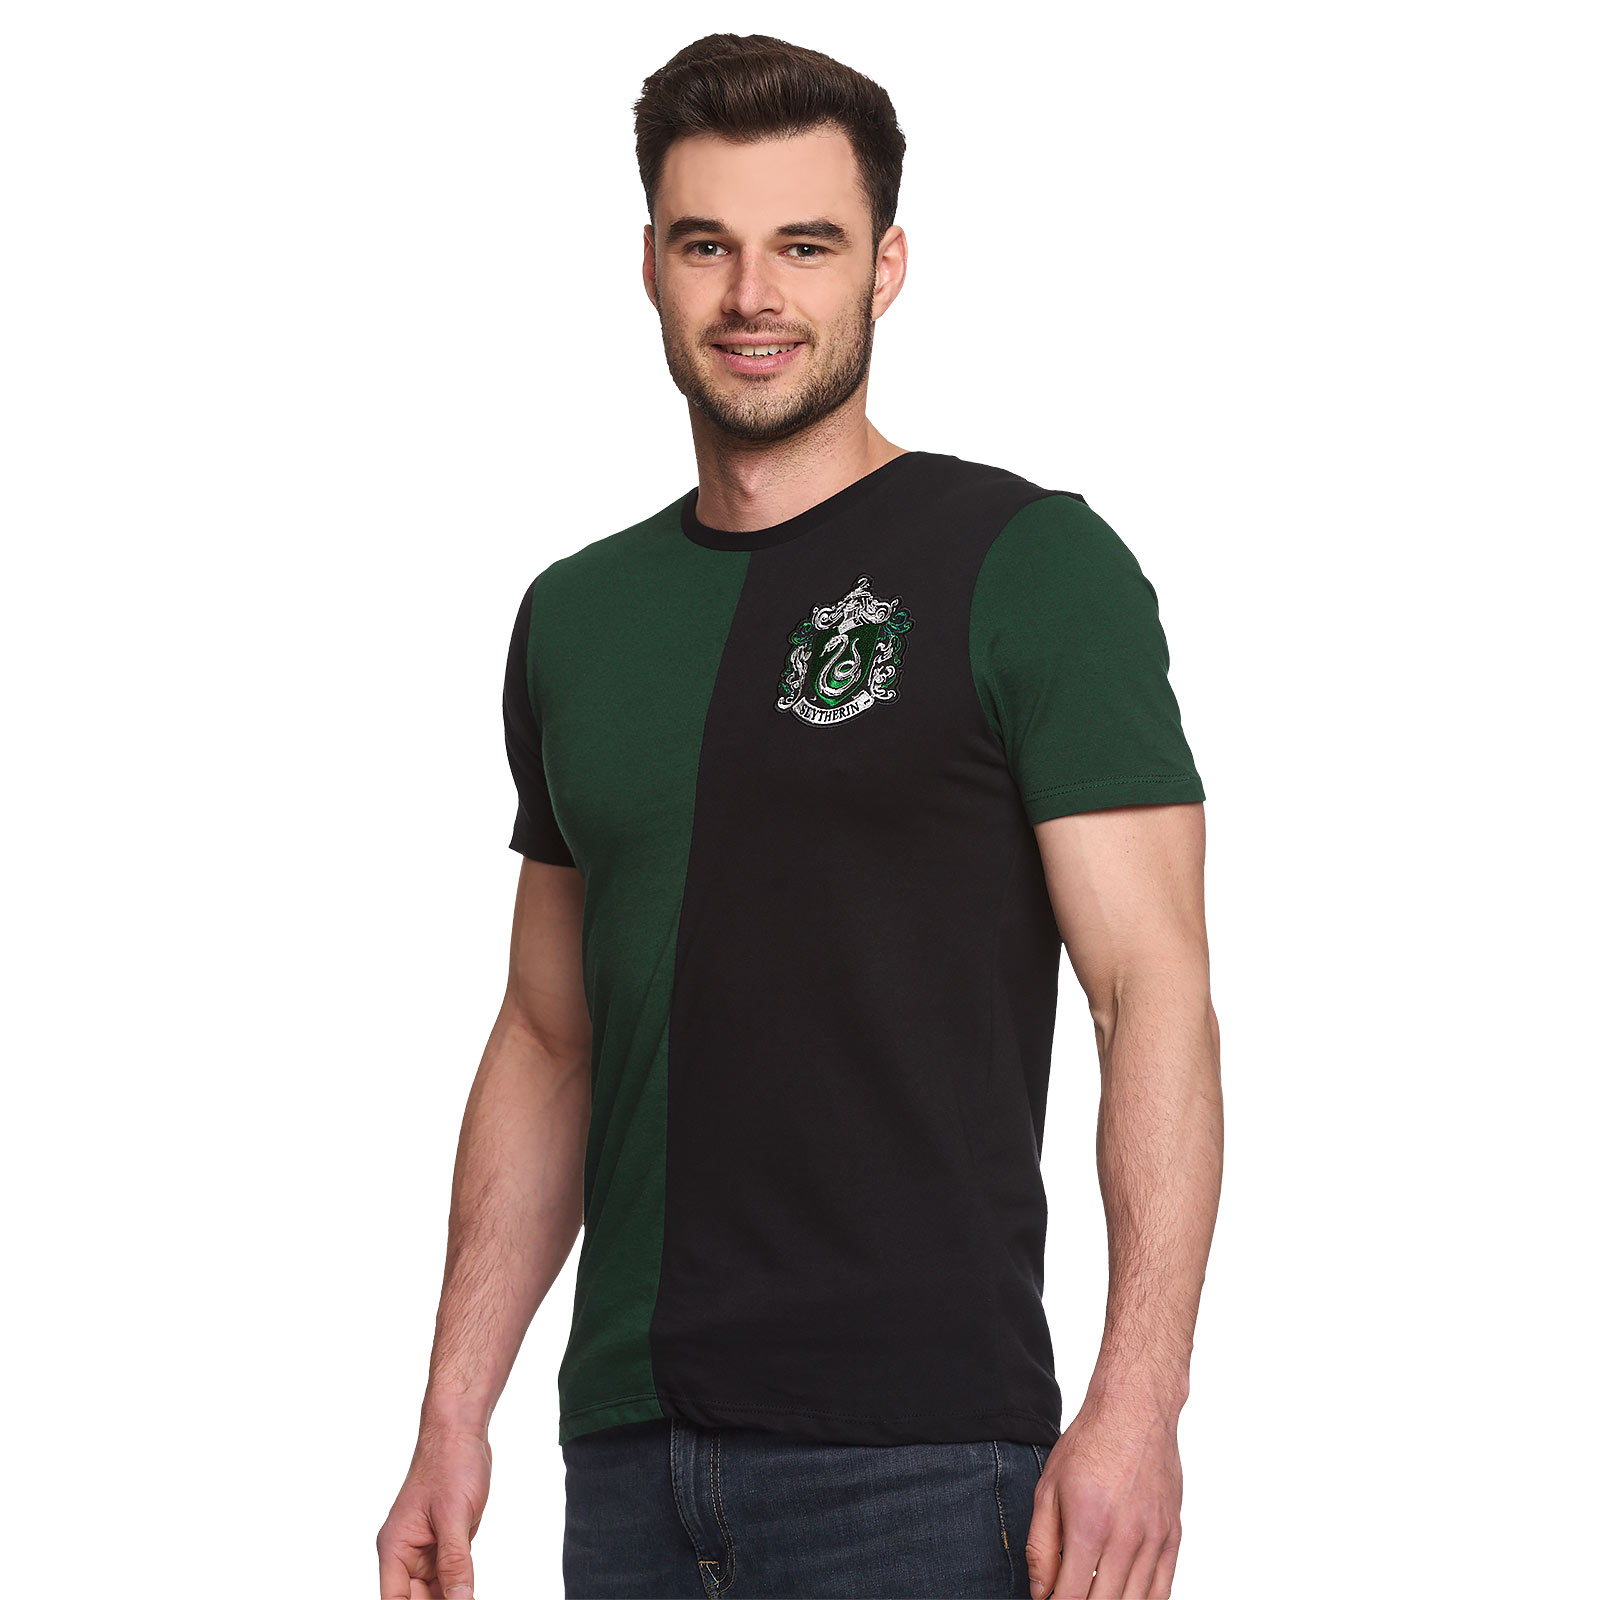 Harry Potter - Slytherin Toernooi T-Shirt groen-zwart